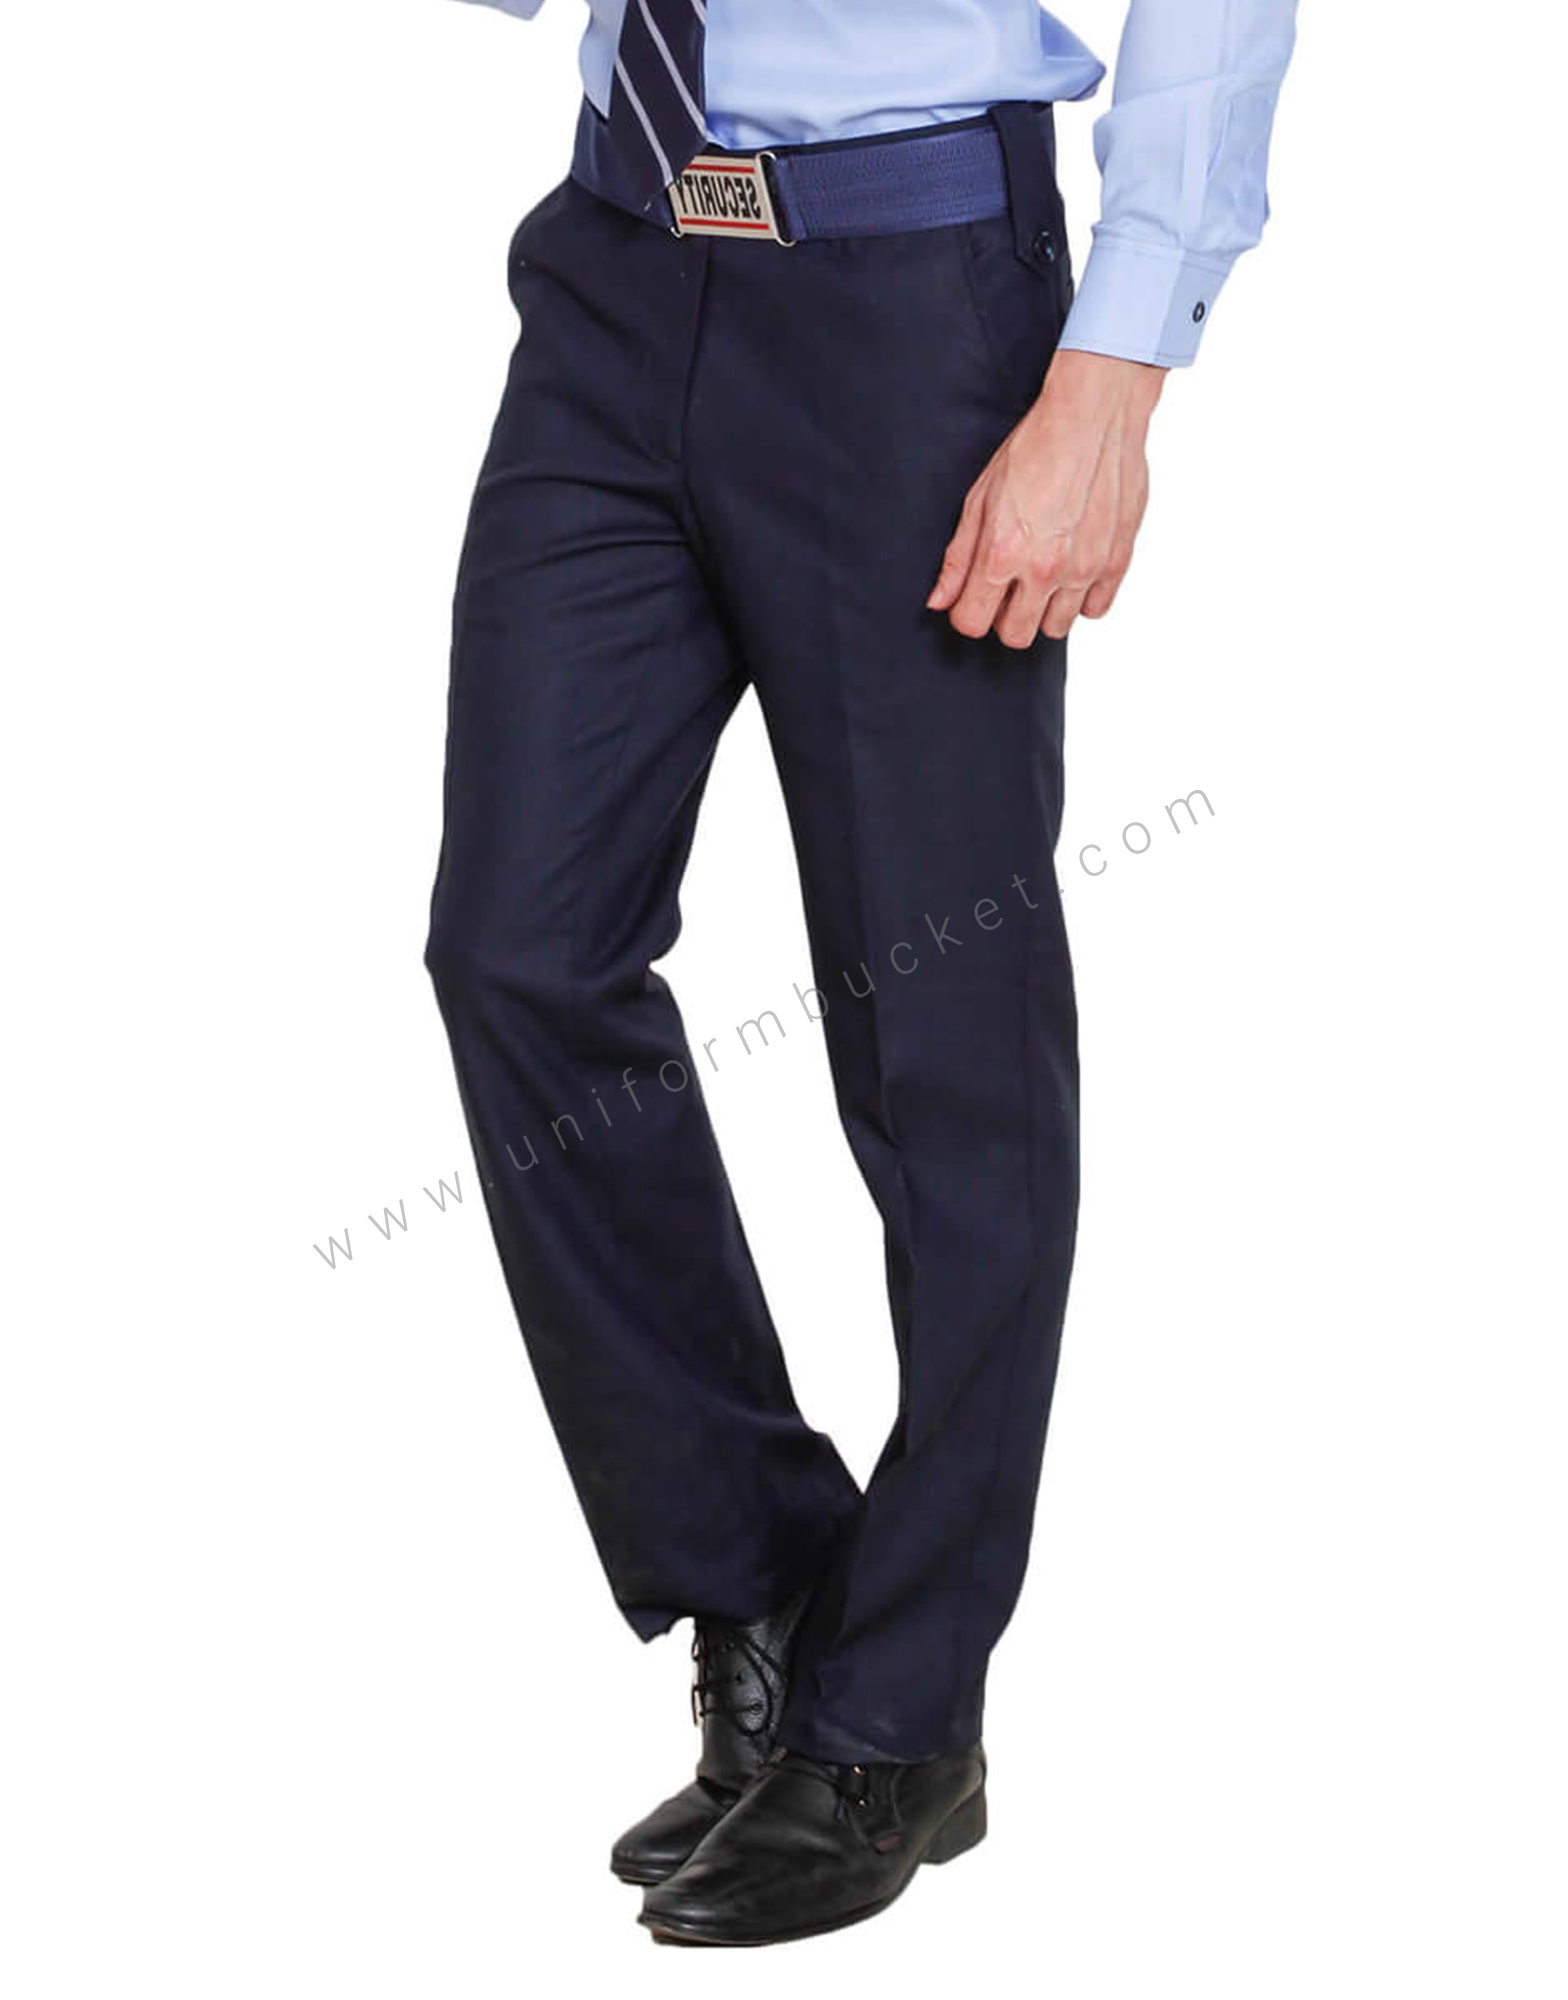 Deena Uniforms Regular Fit Men Black Trousers  Buy Deena Uniforms Regular  Fit Men Black Trousers Online at Best Prices in India  Flipkartcom